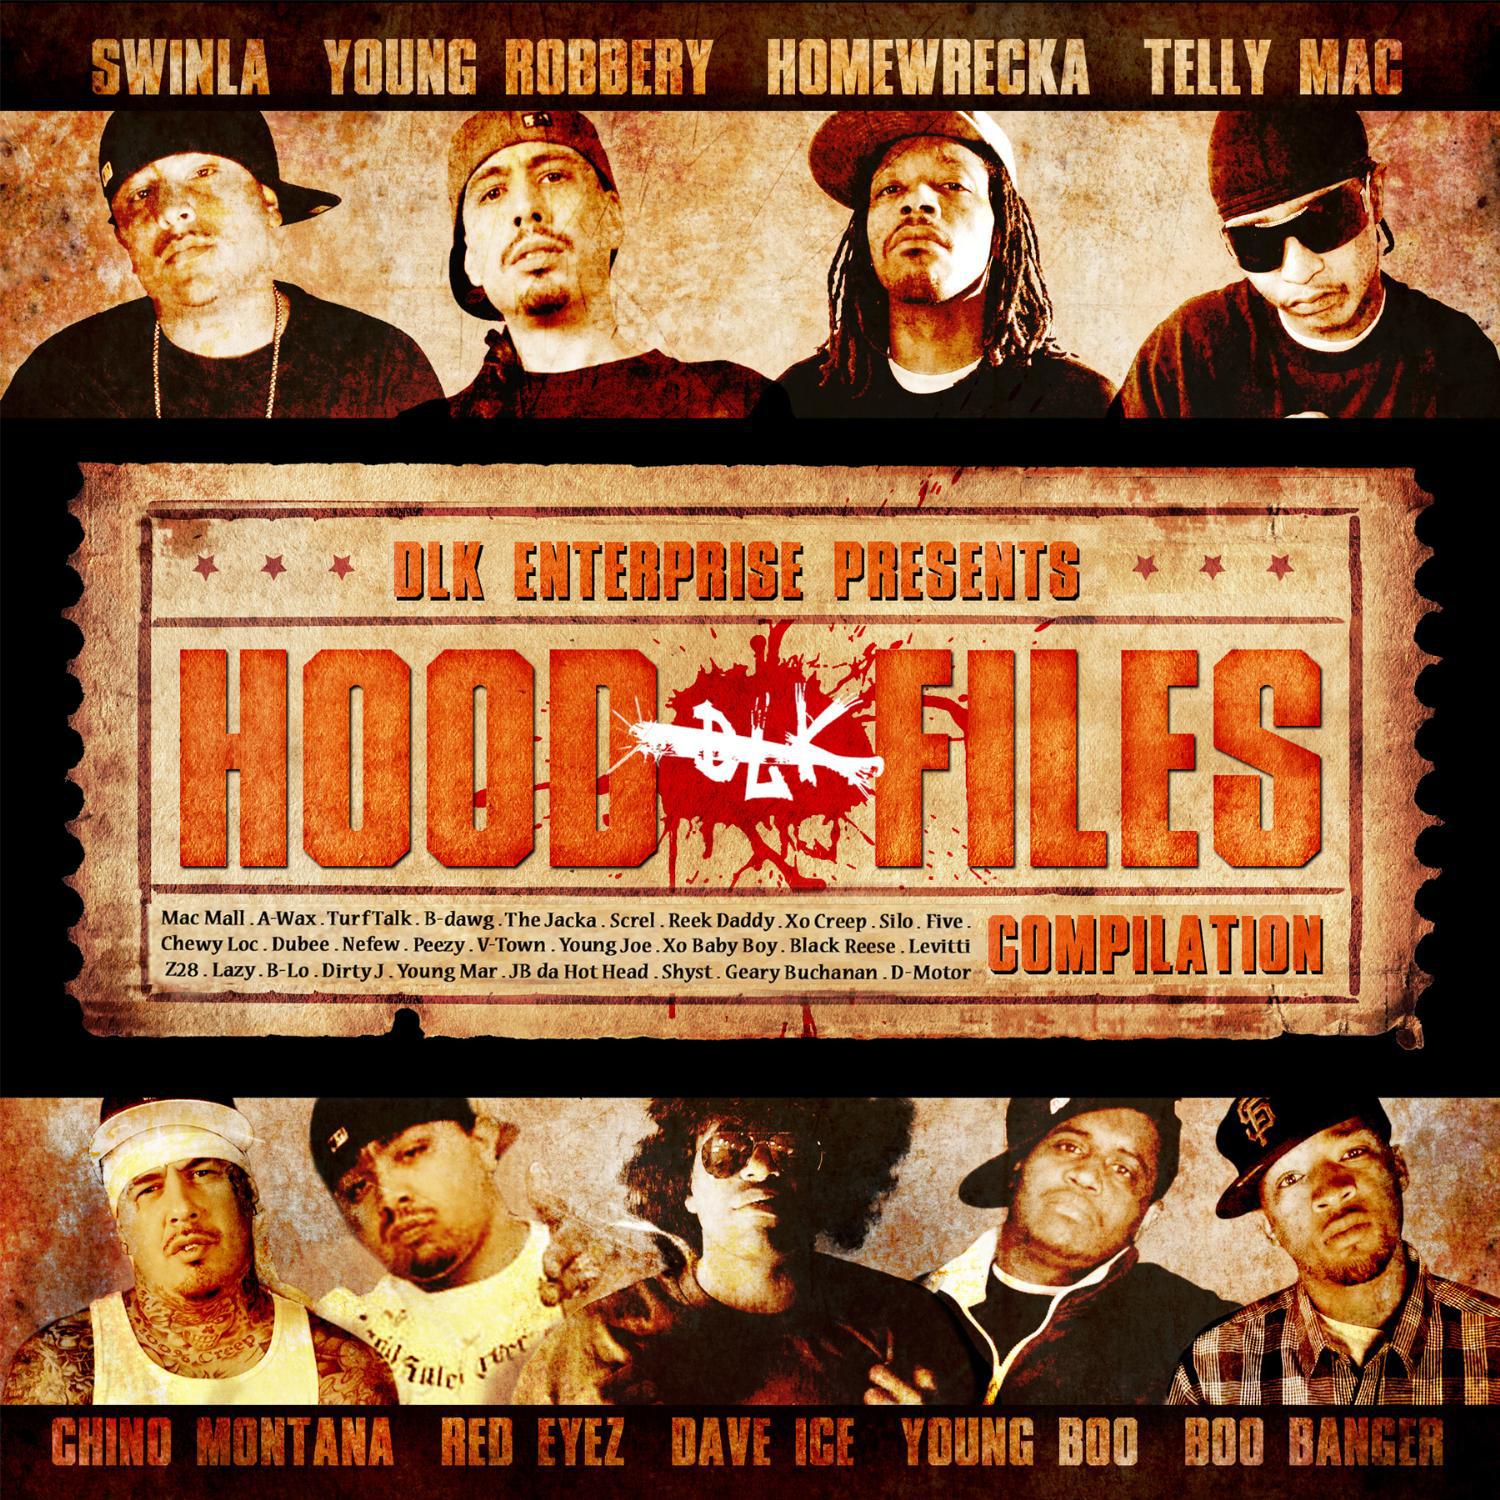 DLK Enterprise Presents: Hood Files compilation